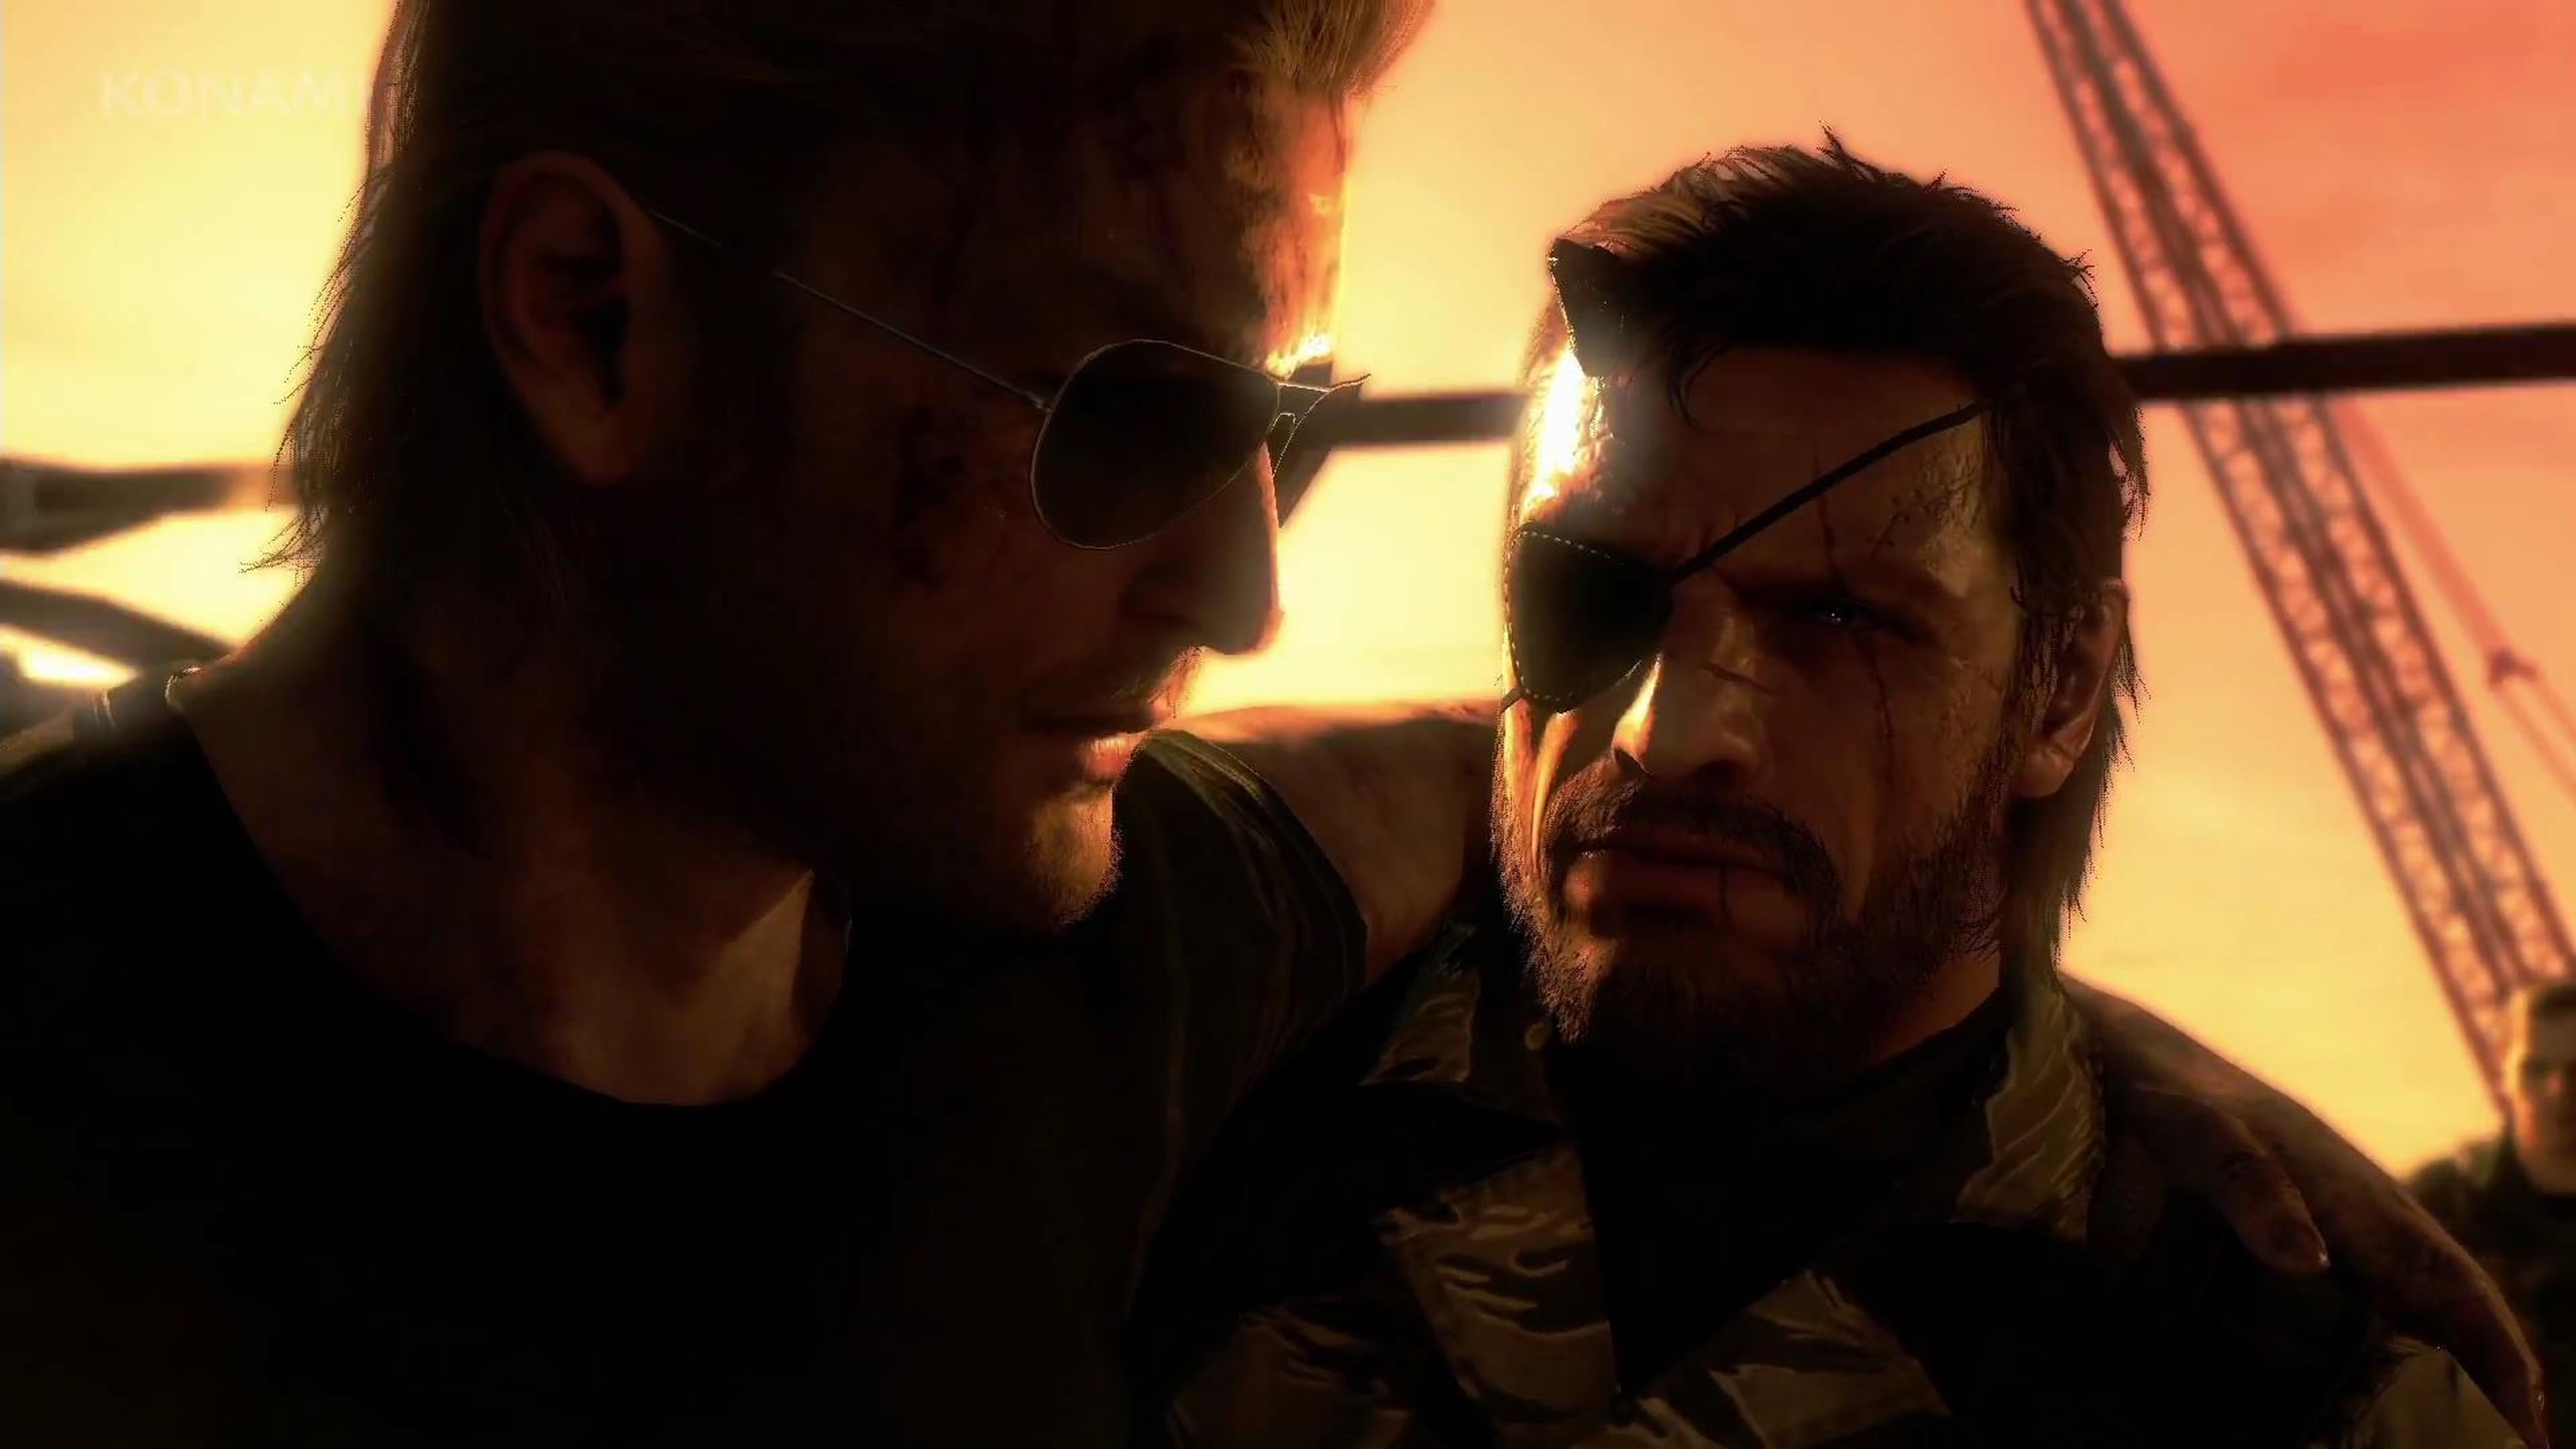 Todo sobre Metal Gear Solid V (V)